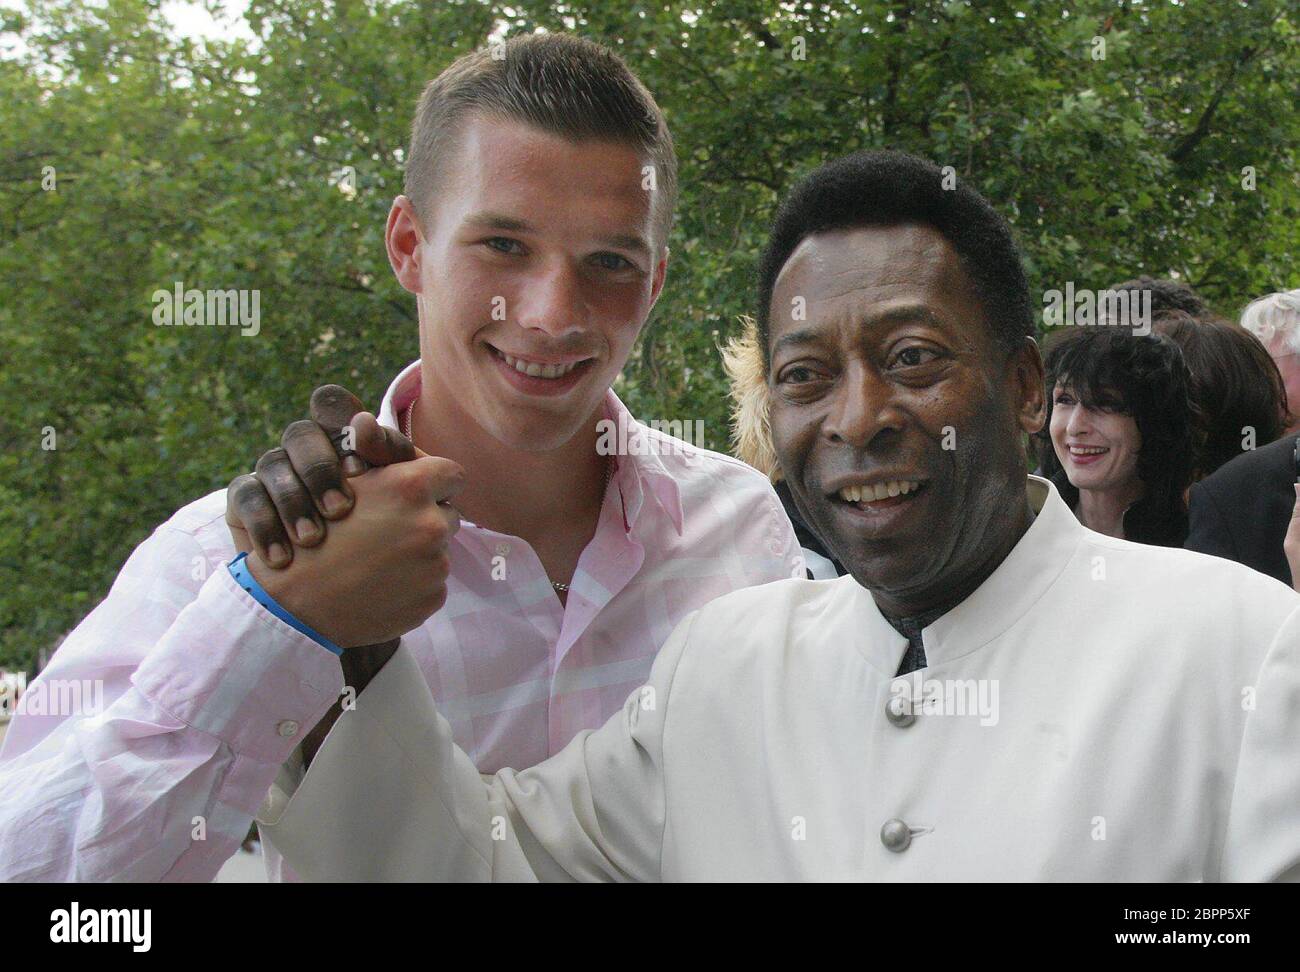 WJT 2005 in Köln - Die brasilianische Fußball-Legende Pelé zu Besuch in Köln. Zu seiner Linken Lukas Podolski. Stock Photo